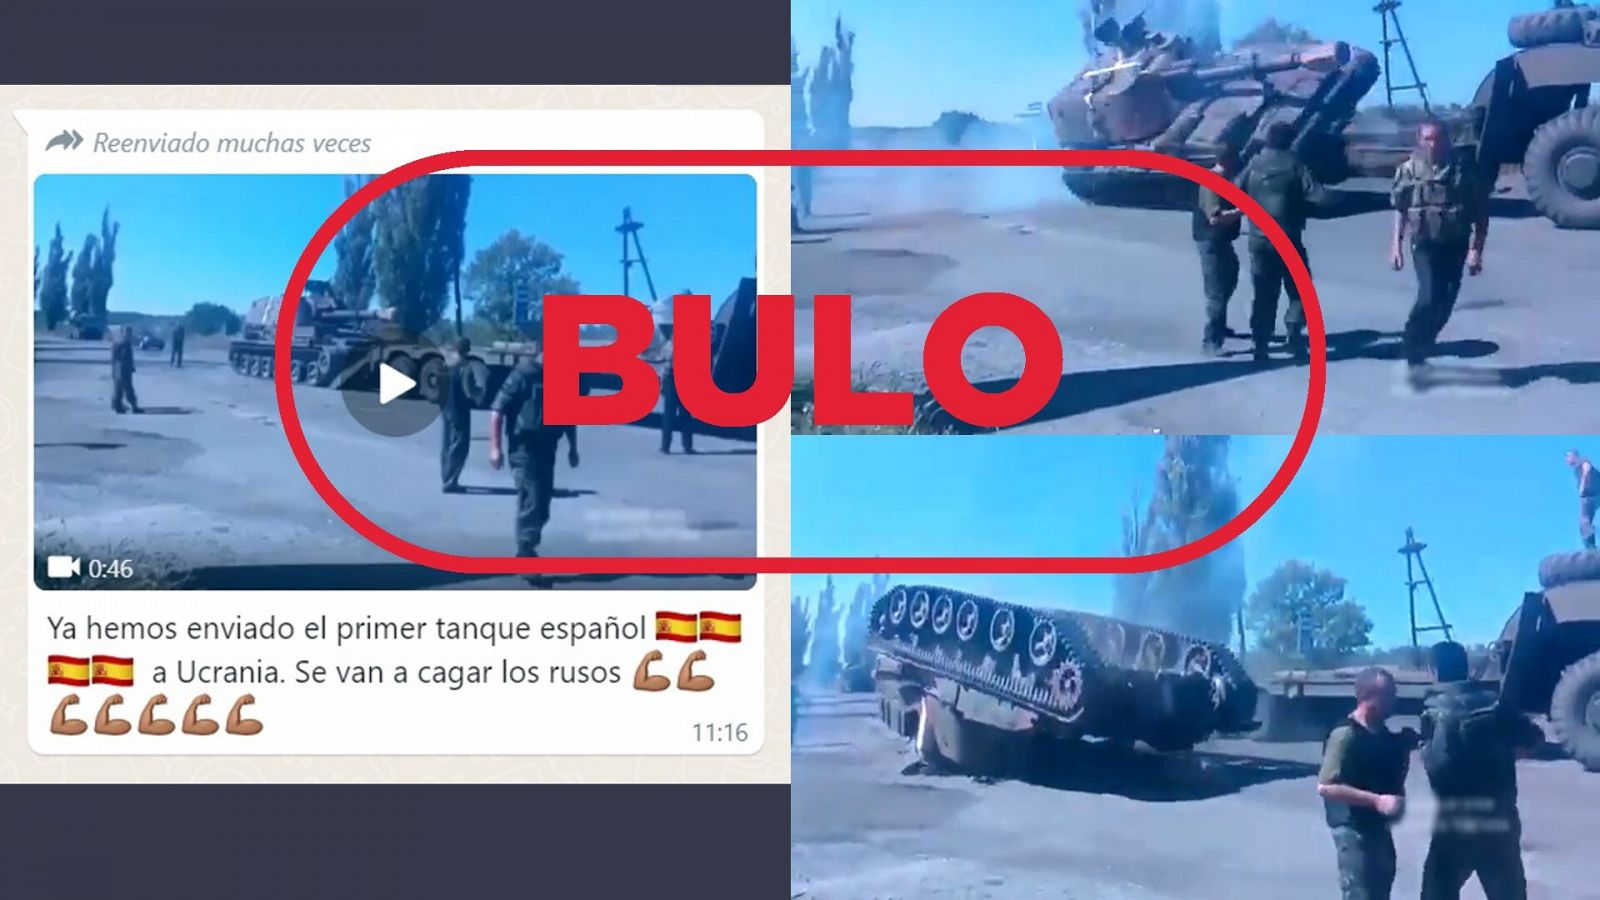 Mensaje que difunde el bulo del vídeo que muestra el vuelco de un vehículo militar de cadenas del que dicen que es un tanque militar español enviado a Ucrania, con el sello 'Bulo' en rojo